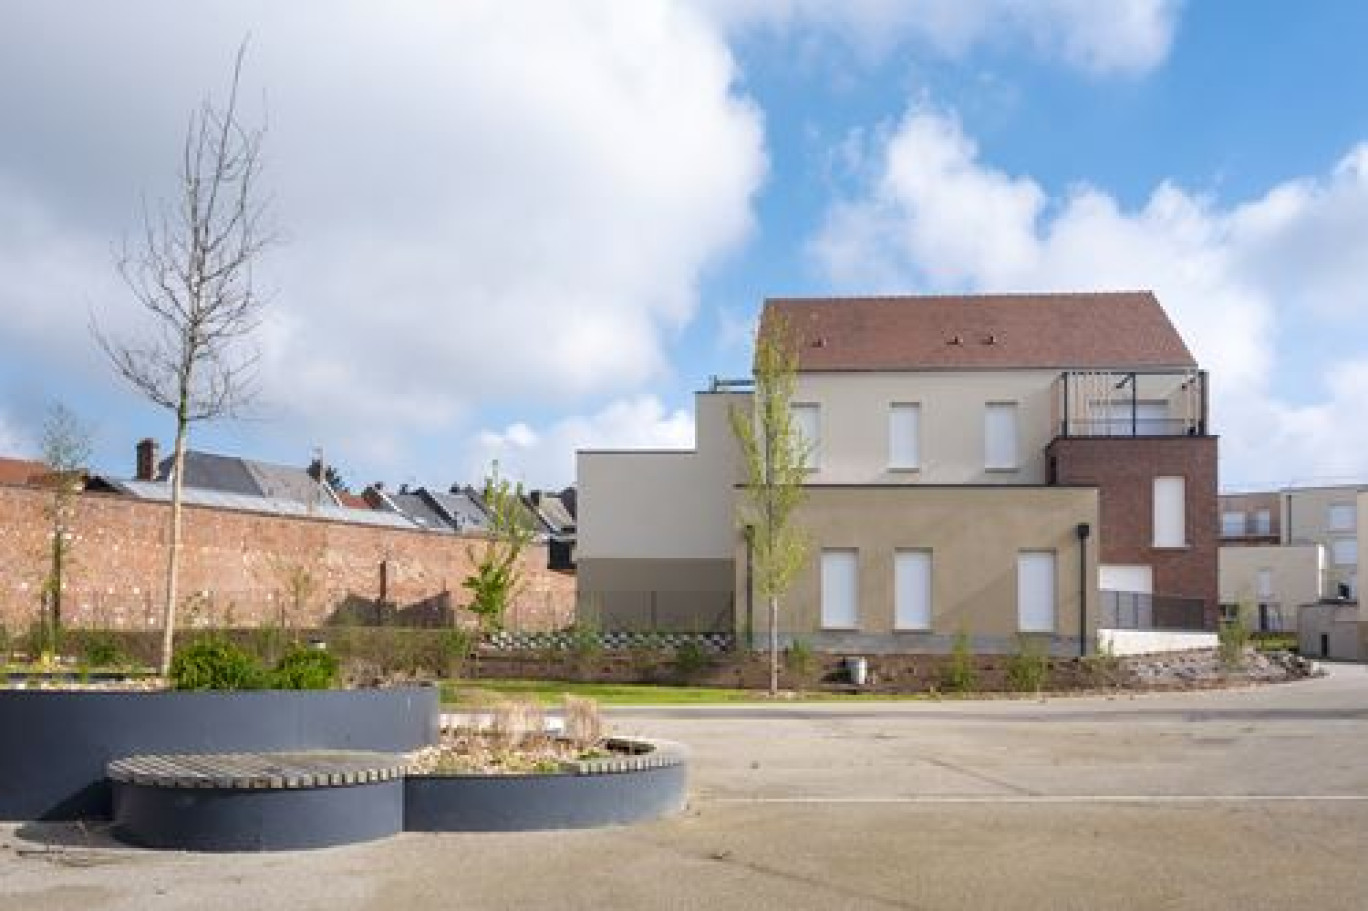 L'écoquartier du Maréchal Juin à Saint-Quentin, une initiative d'aménagement qui intègre les principes et les défis du développement durable à l'échelle d'un quartier. (c)Yann Anteale